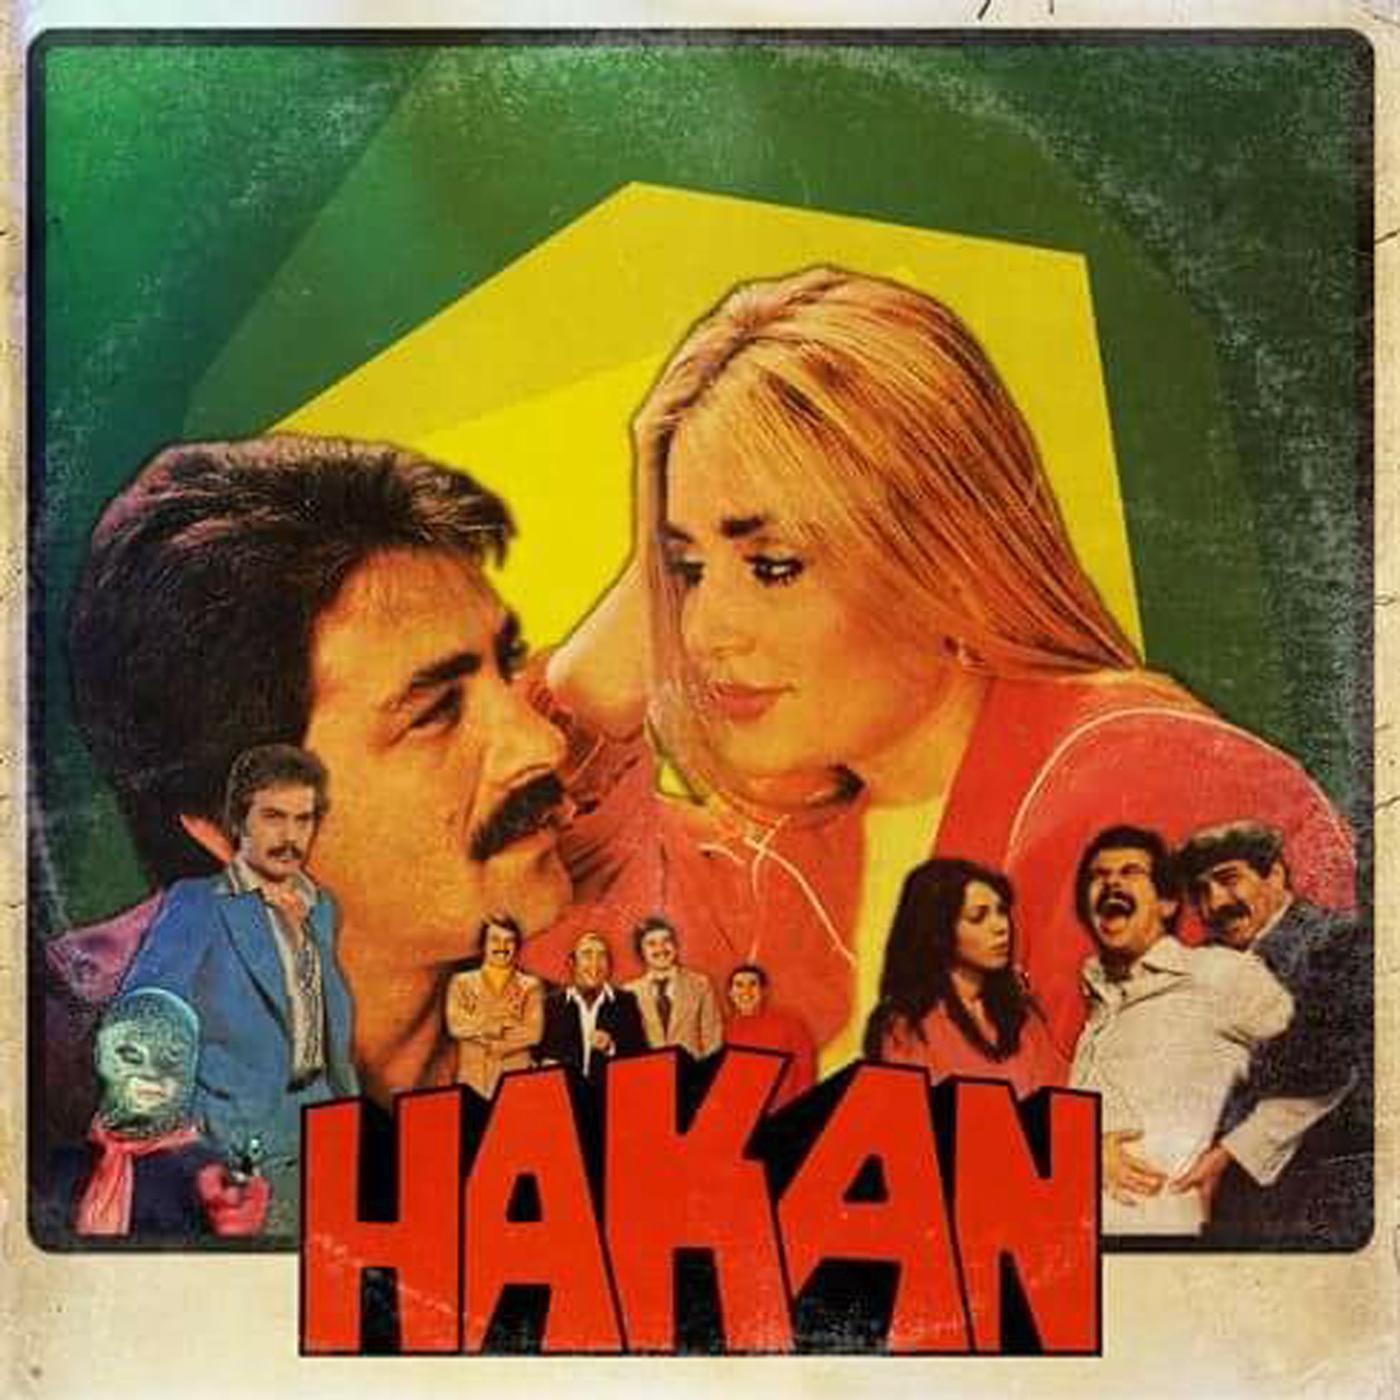 Hakan II专辑